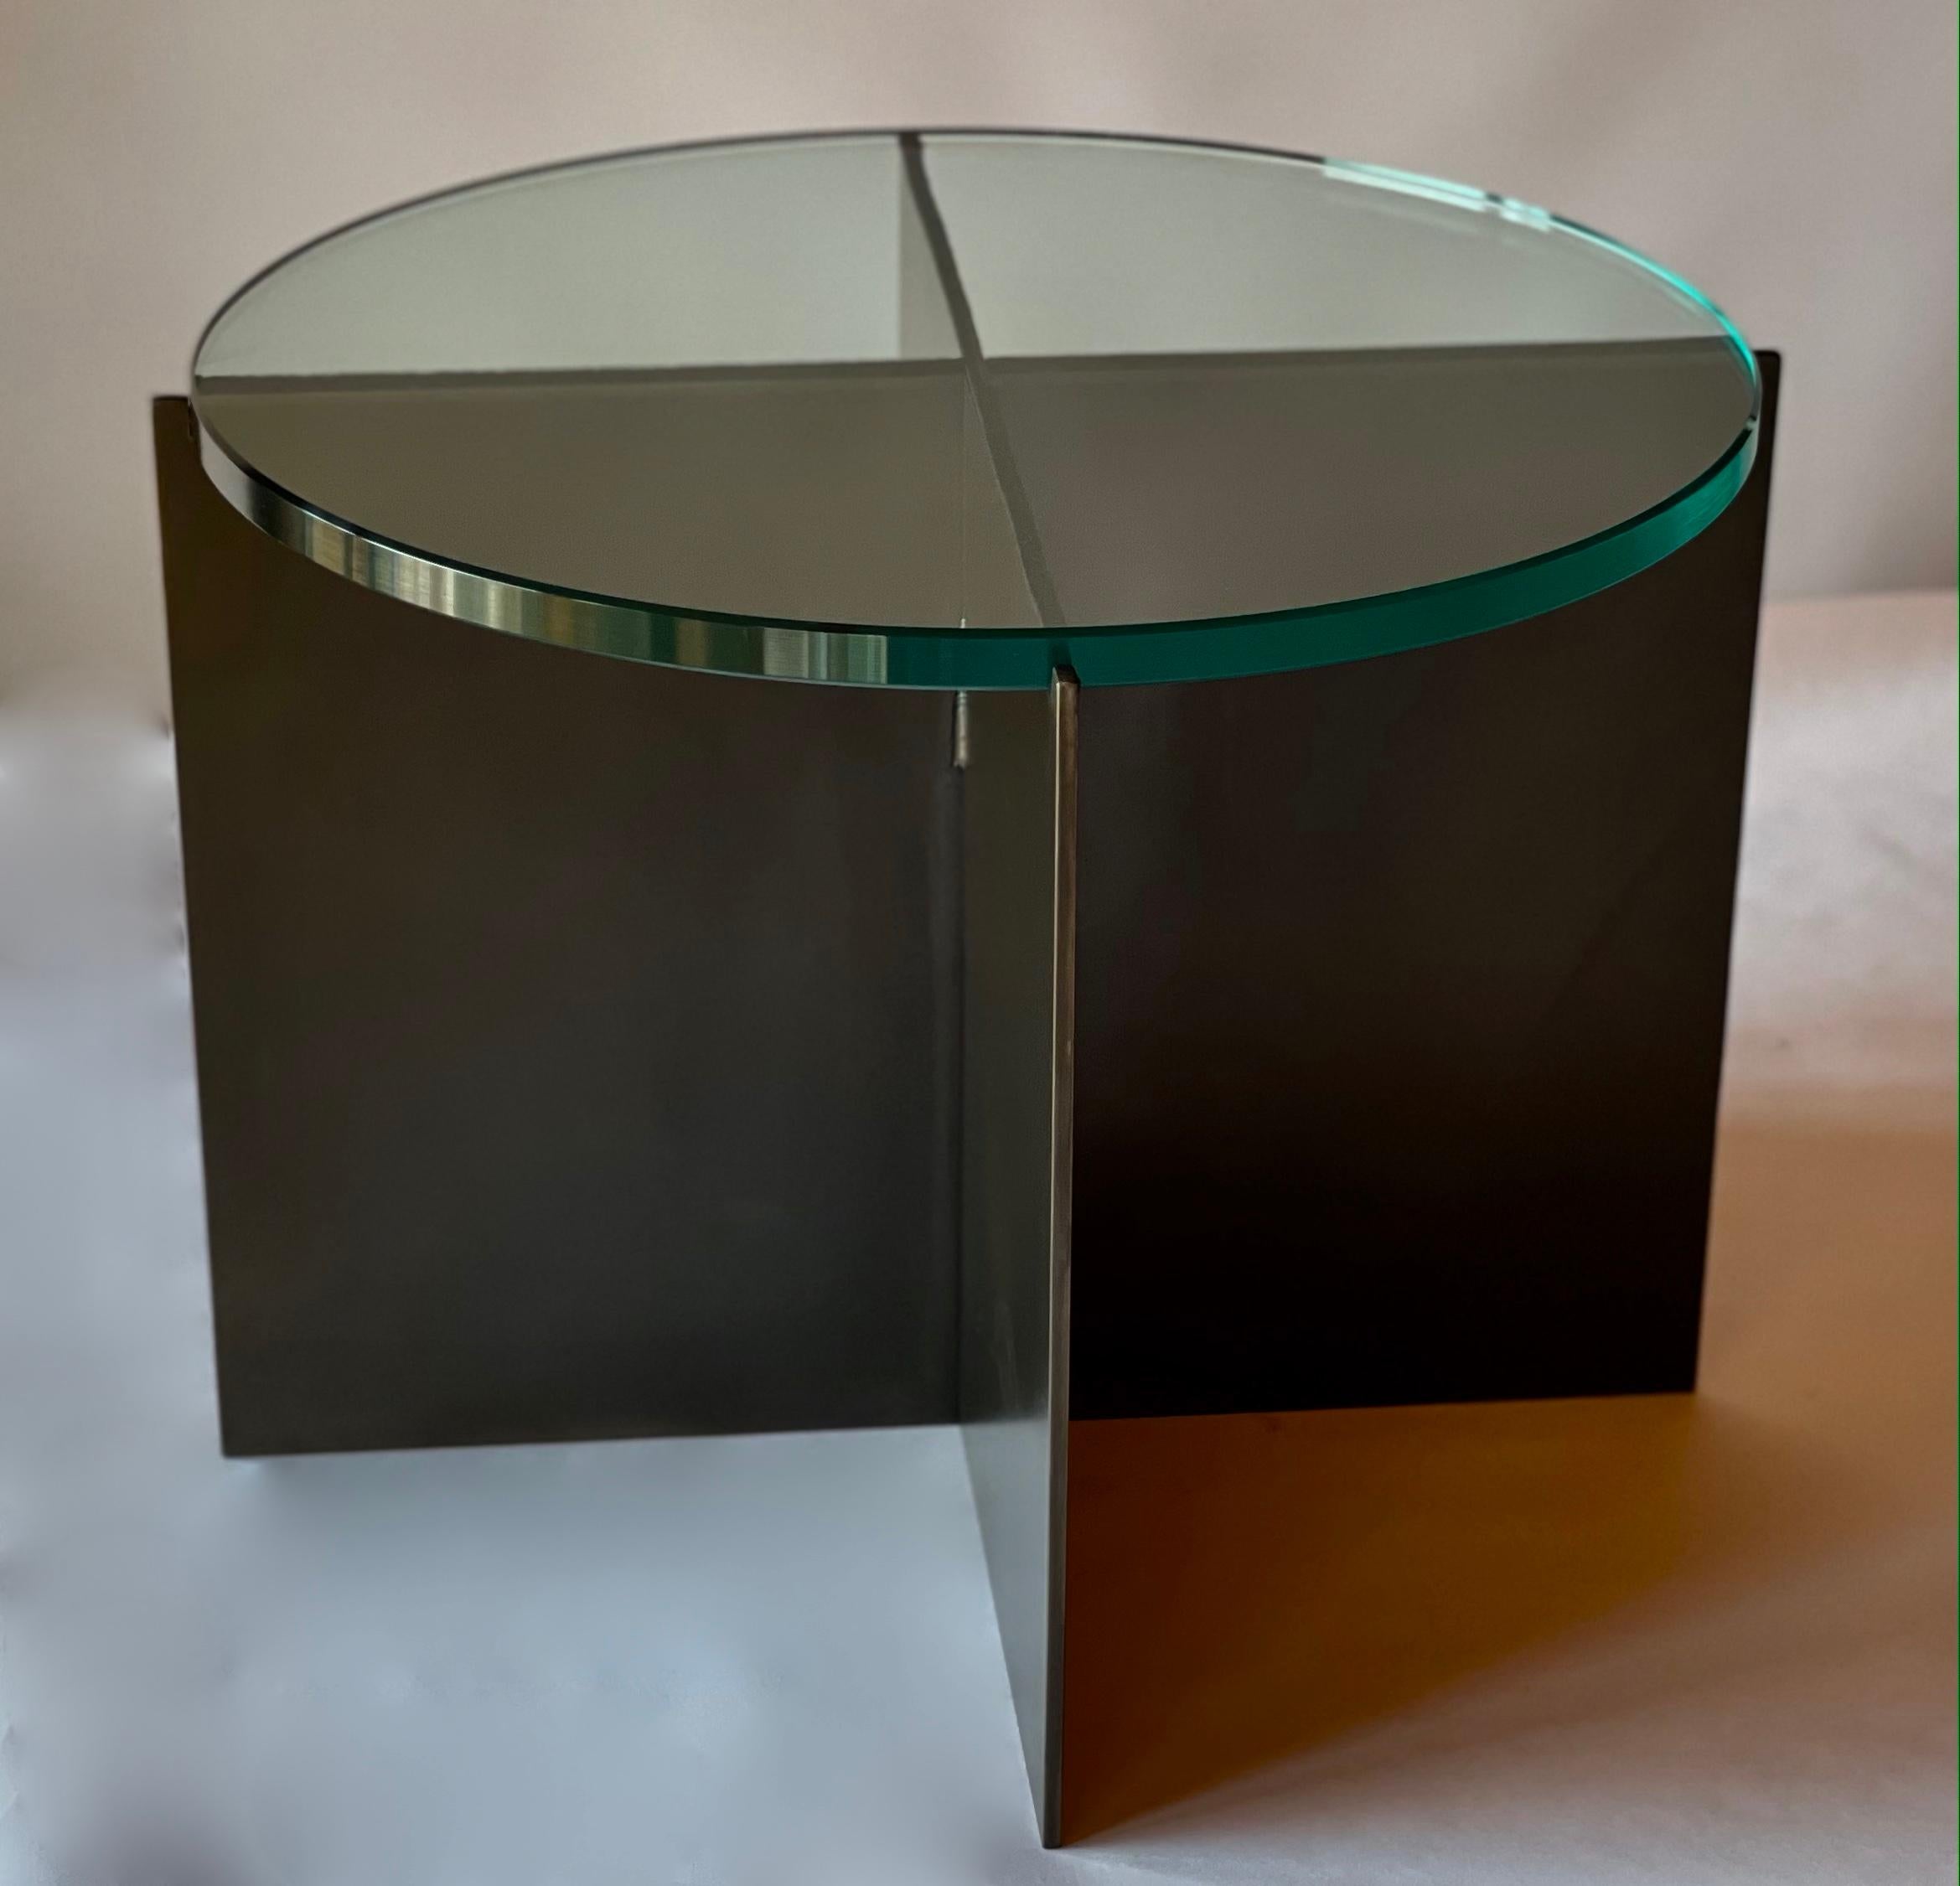 Der Crux Cocktail Table, ein Originaldesign, das exklusiv von Vermontica angeboten wird, ist ein moderner, minimalistischer Beistelltisch aus geschwärztem Stahl und Glas, der von Scott Gordon in Vermont entworfen und hergestellt wird. Der Sockel ist